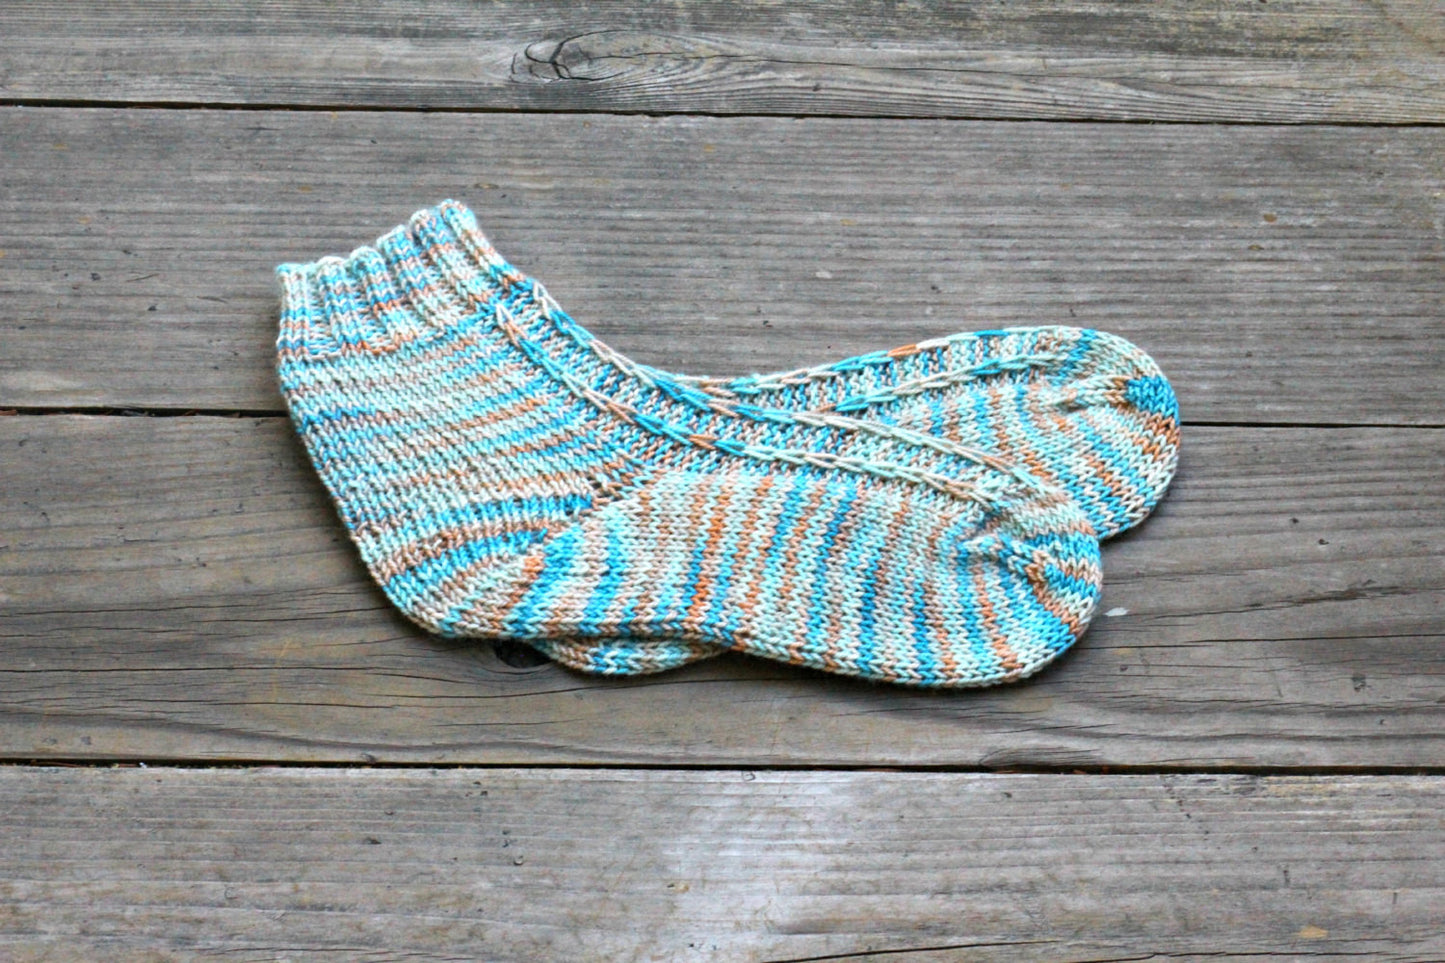 Woolen knit socks